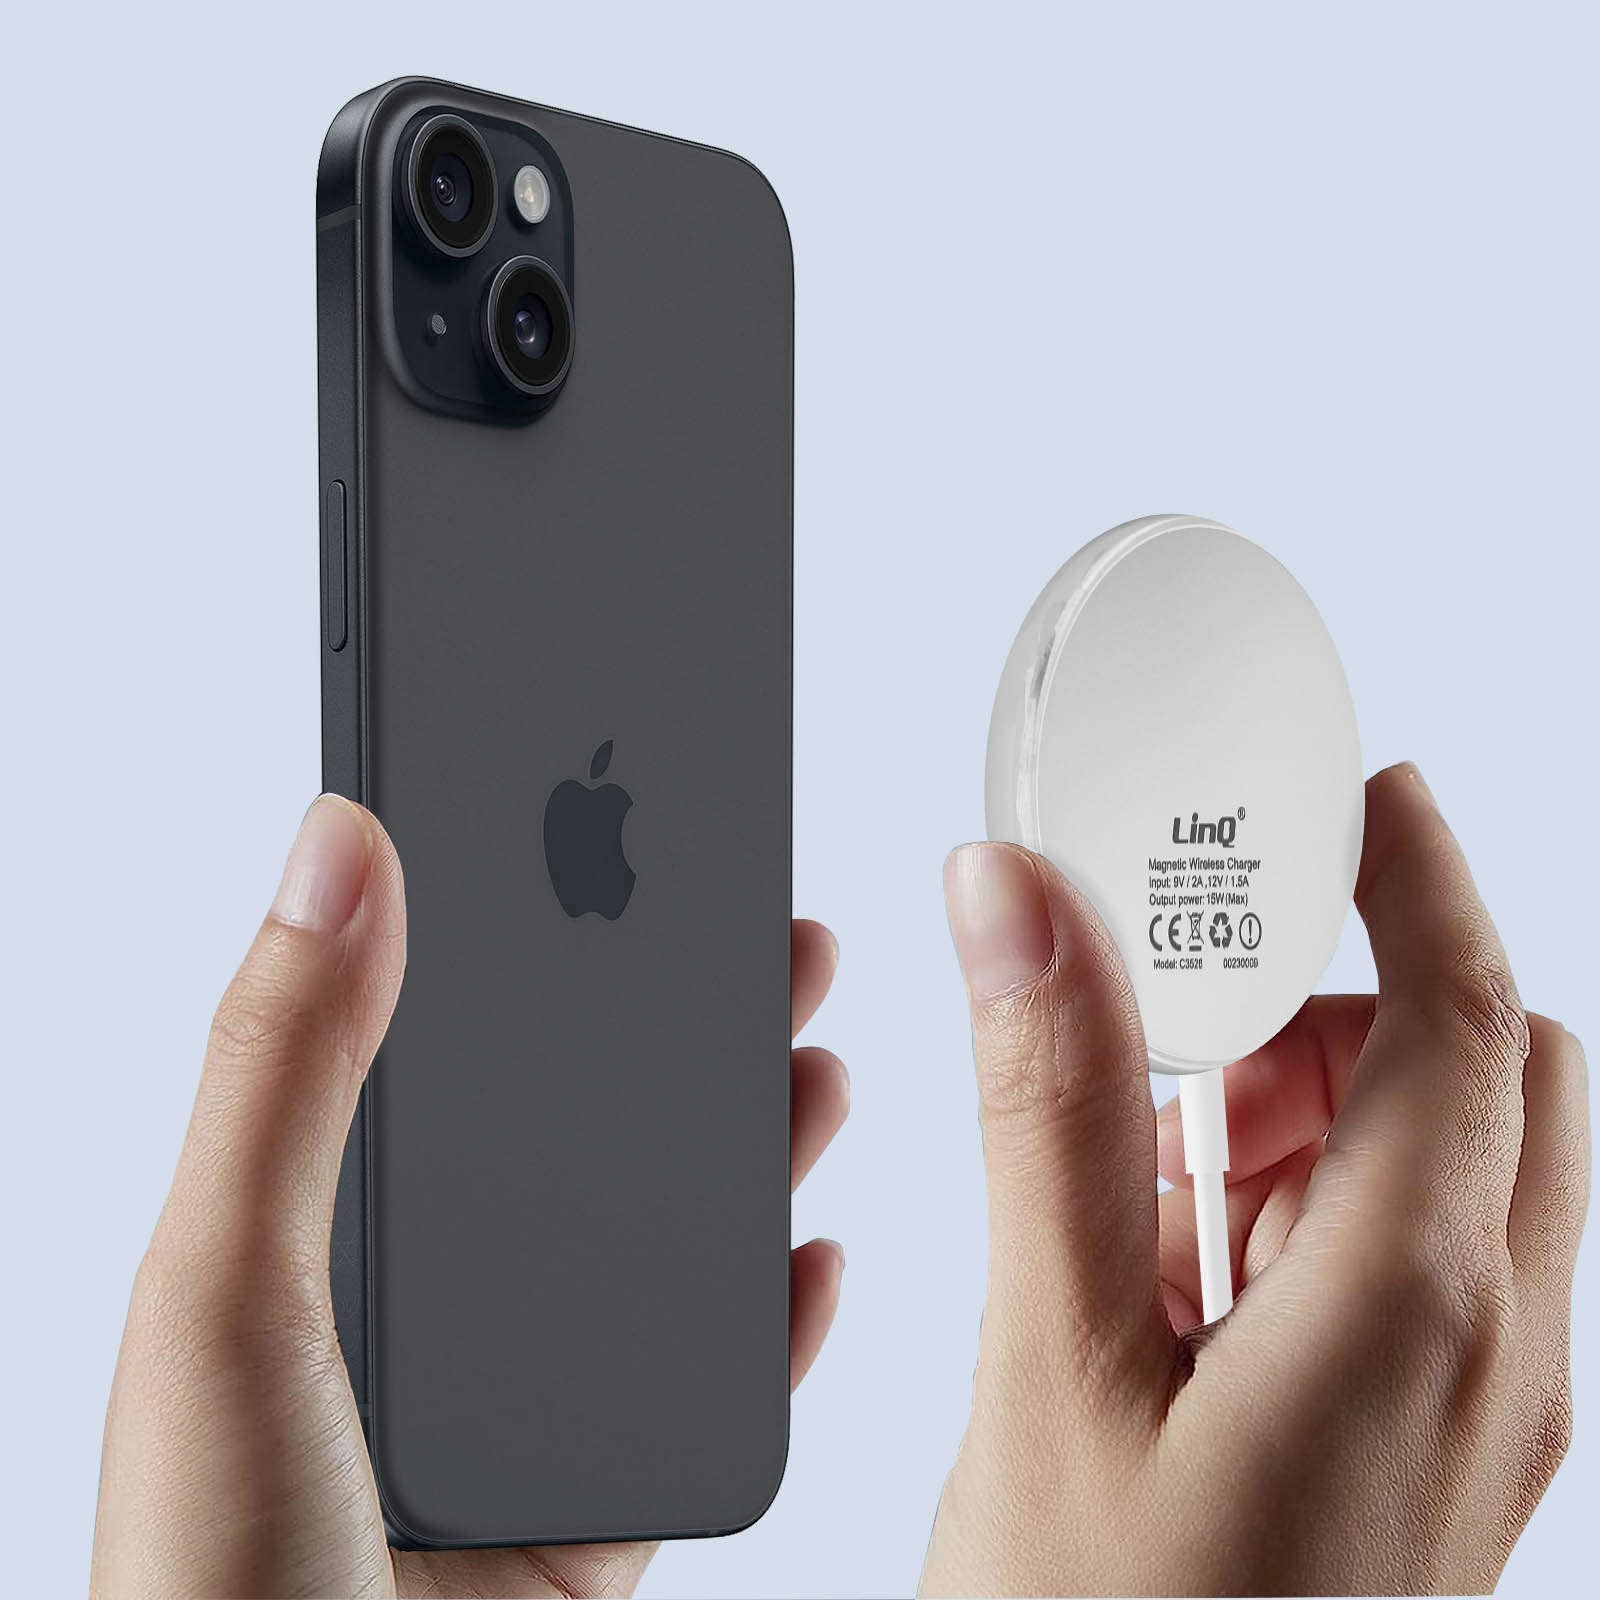 Chargeur MagSafe iPhone 15W, Charge Sans Fil Rapide avec Câble USB-C  Intégré, Swissten MagStick - Blanc - Français